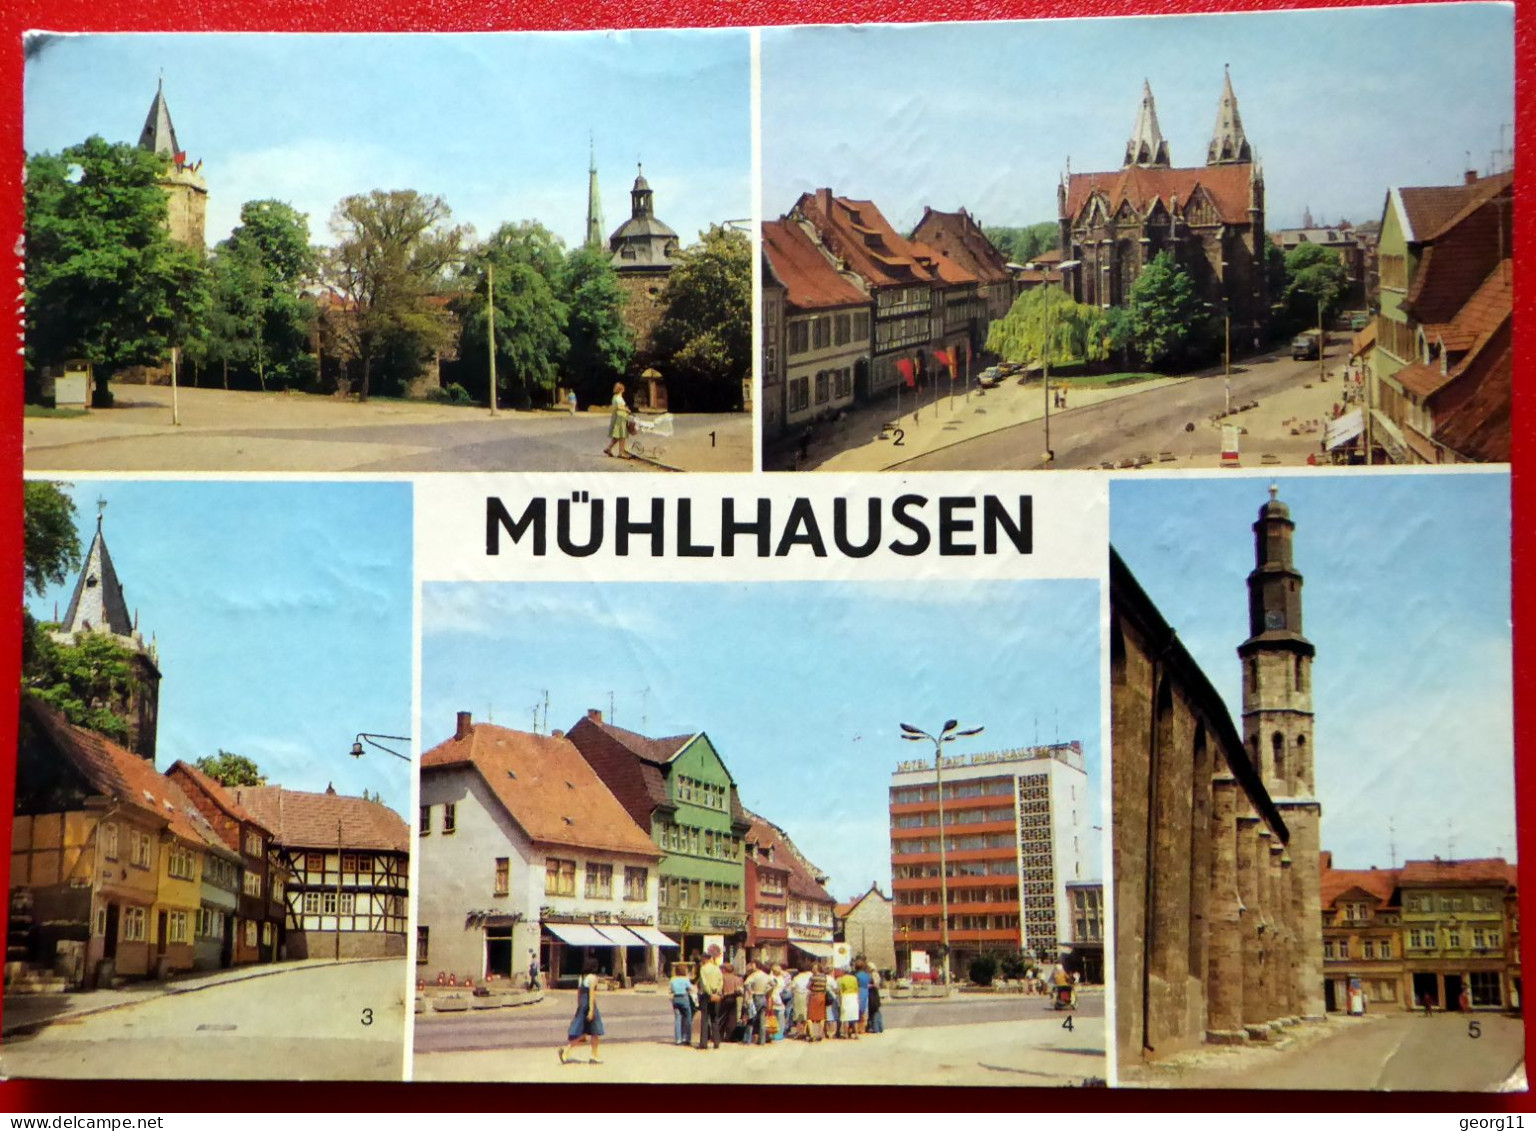 Mühlhausen - Thomas Müntzer Stadt - 1980  - Divi Blasii Kirche - Wilhelm Pieck Platz - Mühlhausen